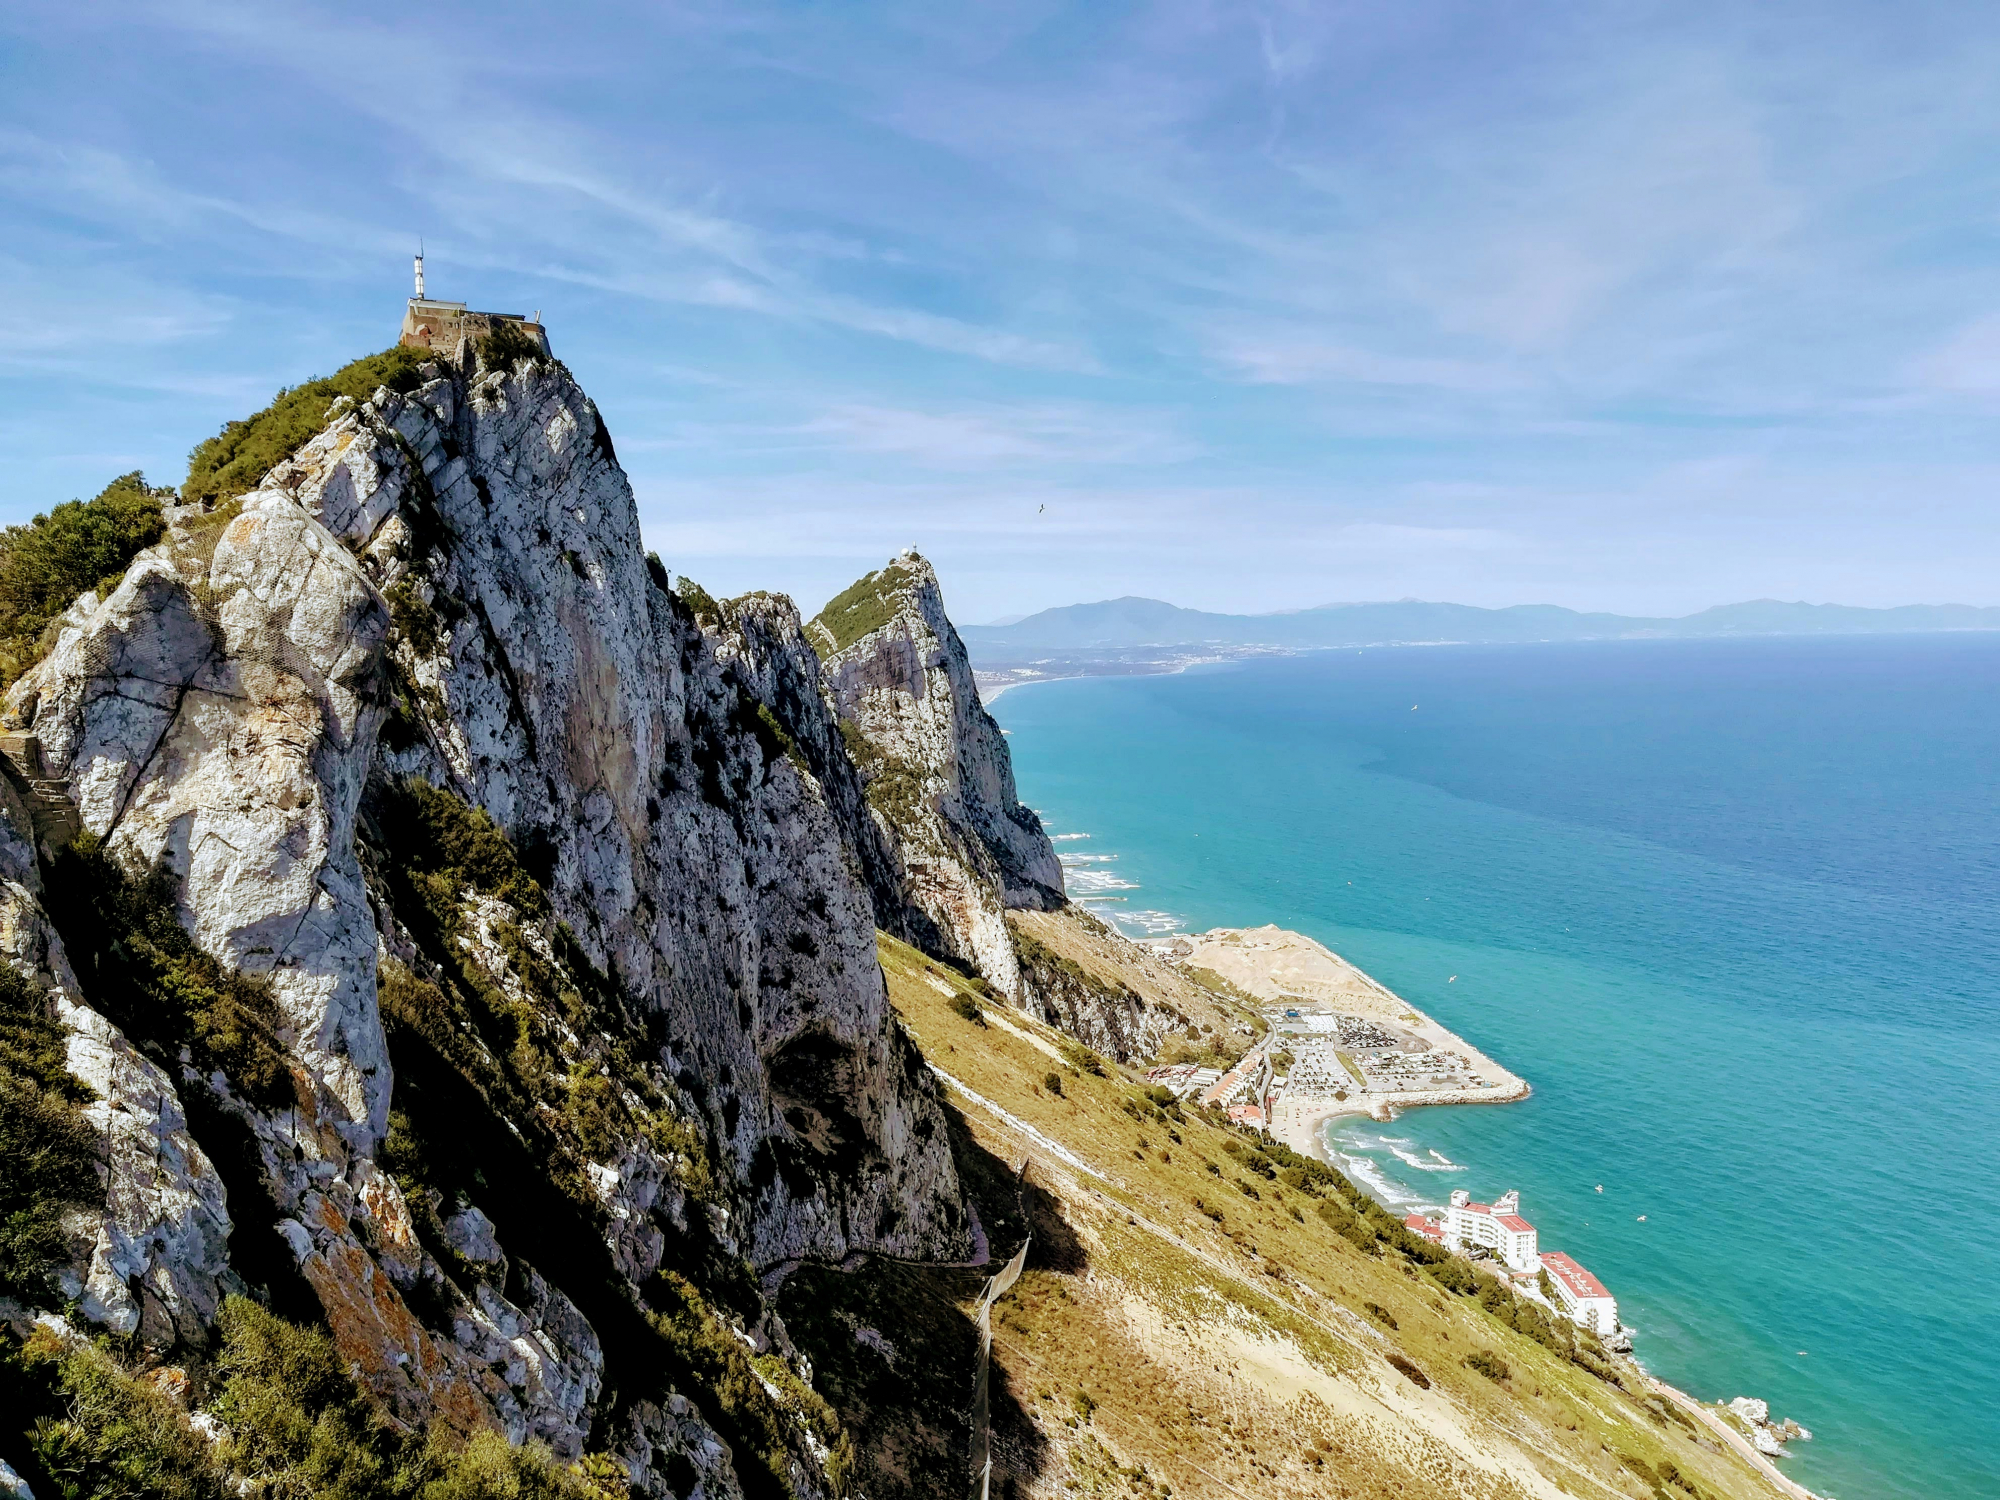 découvrez gibraltar, un territoire britannique d'outre-mer situé à l'extrémité sud de la péninsule ibérique, célèbre pour son rocher emblématique, sa faune variée et son histoire fascinante.